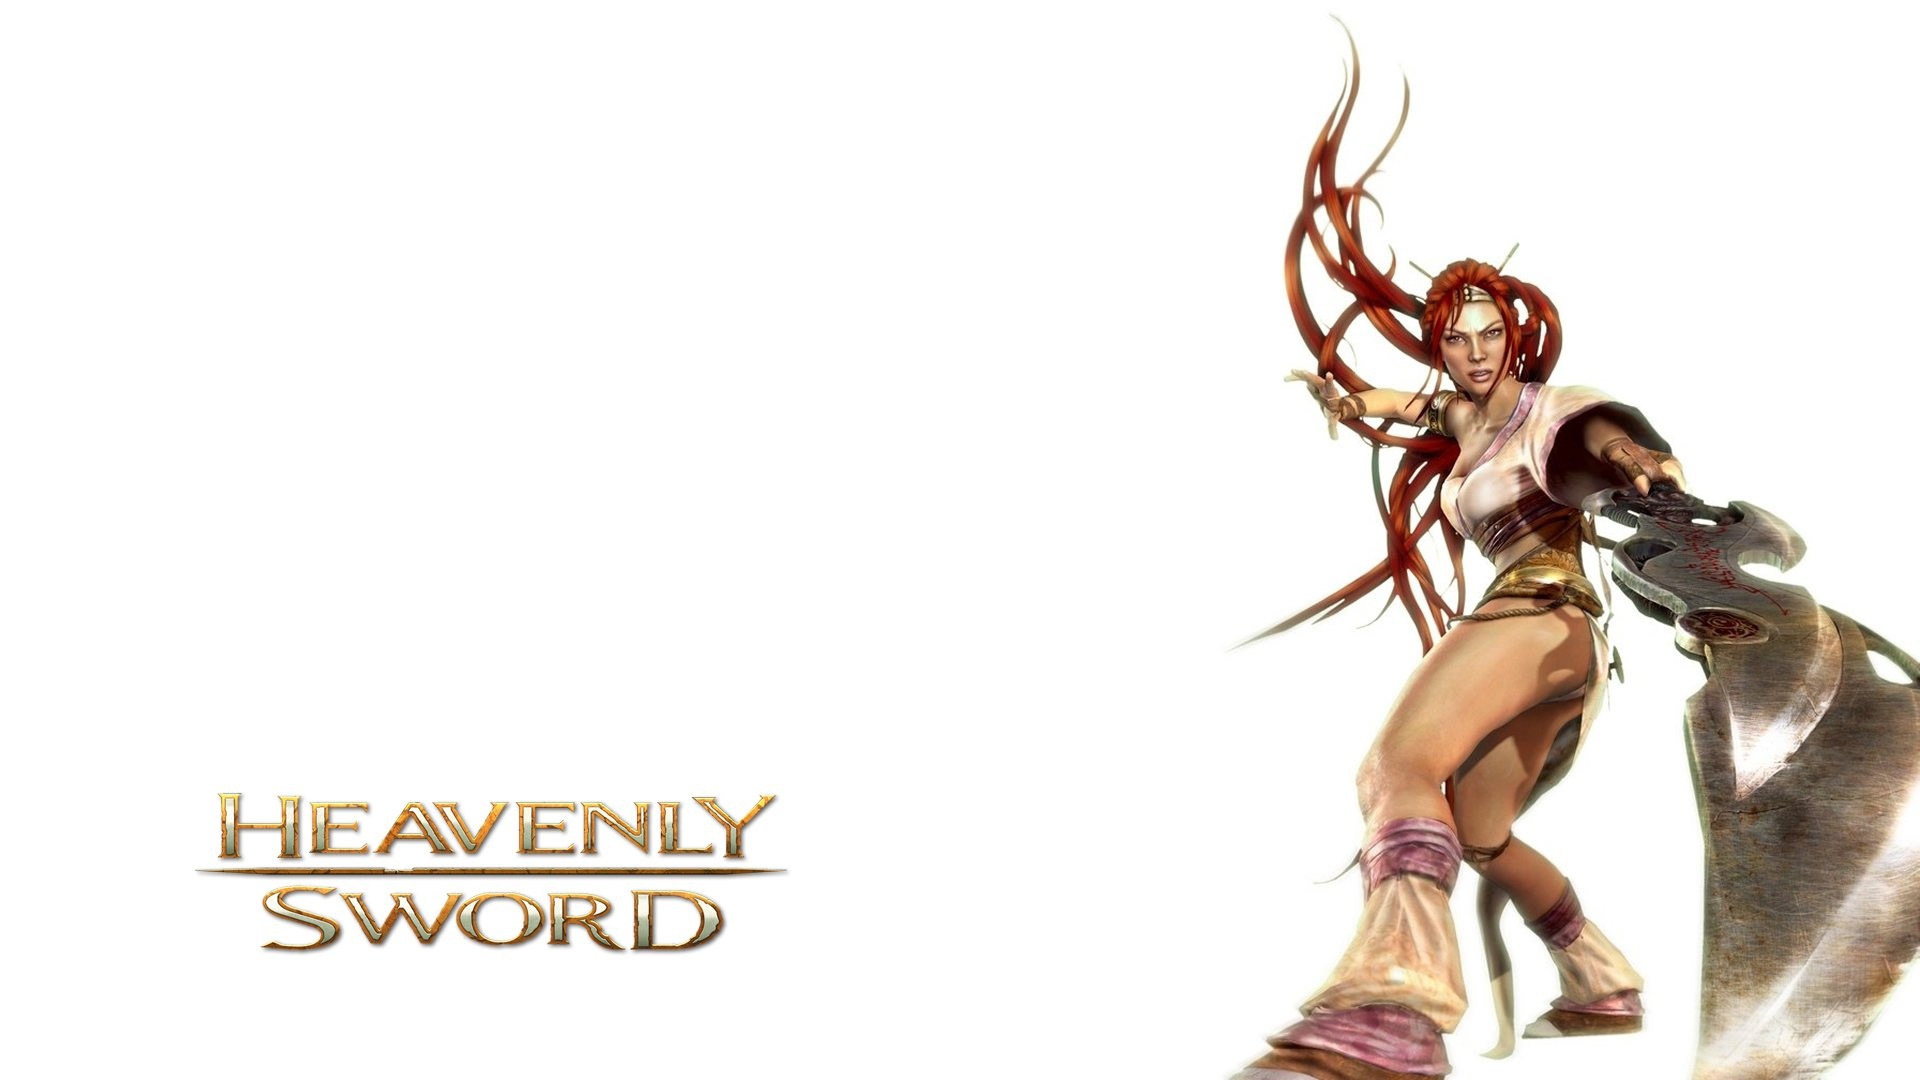 Heavenly Sword, Warrior wallpaper, Video game, 1920x1080 Full HD Desktop